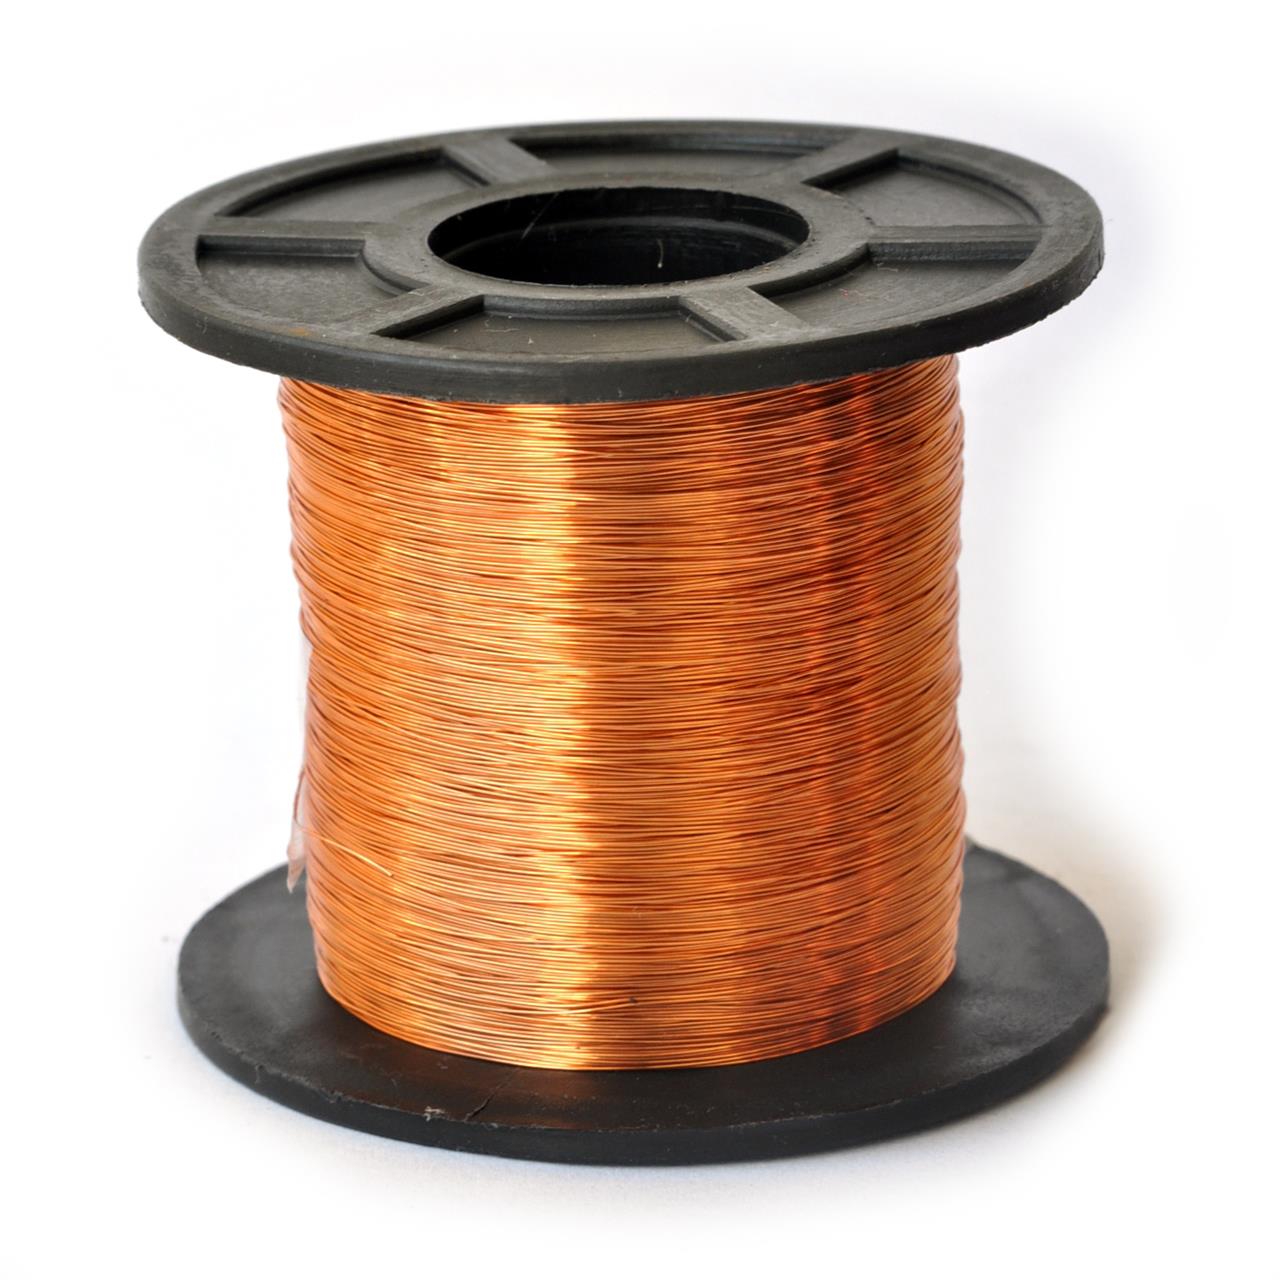 Fios de cobre esmaltados para bobinas, transformadores e indutores - Fio 31 AWG 250g